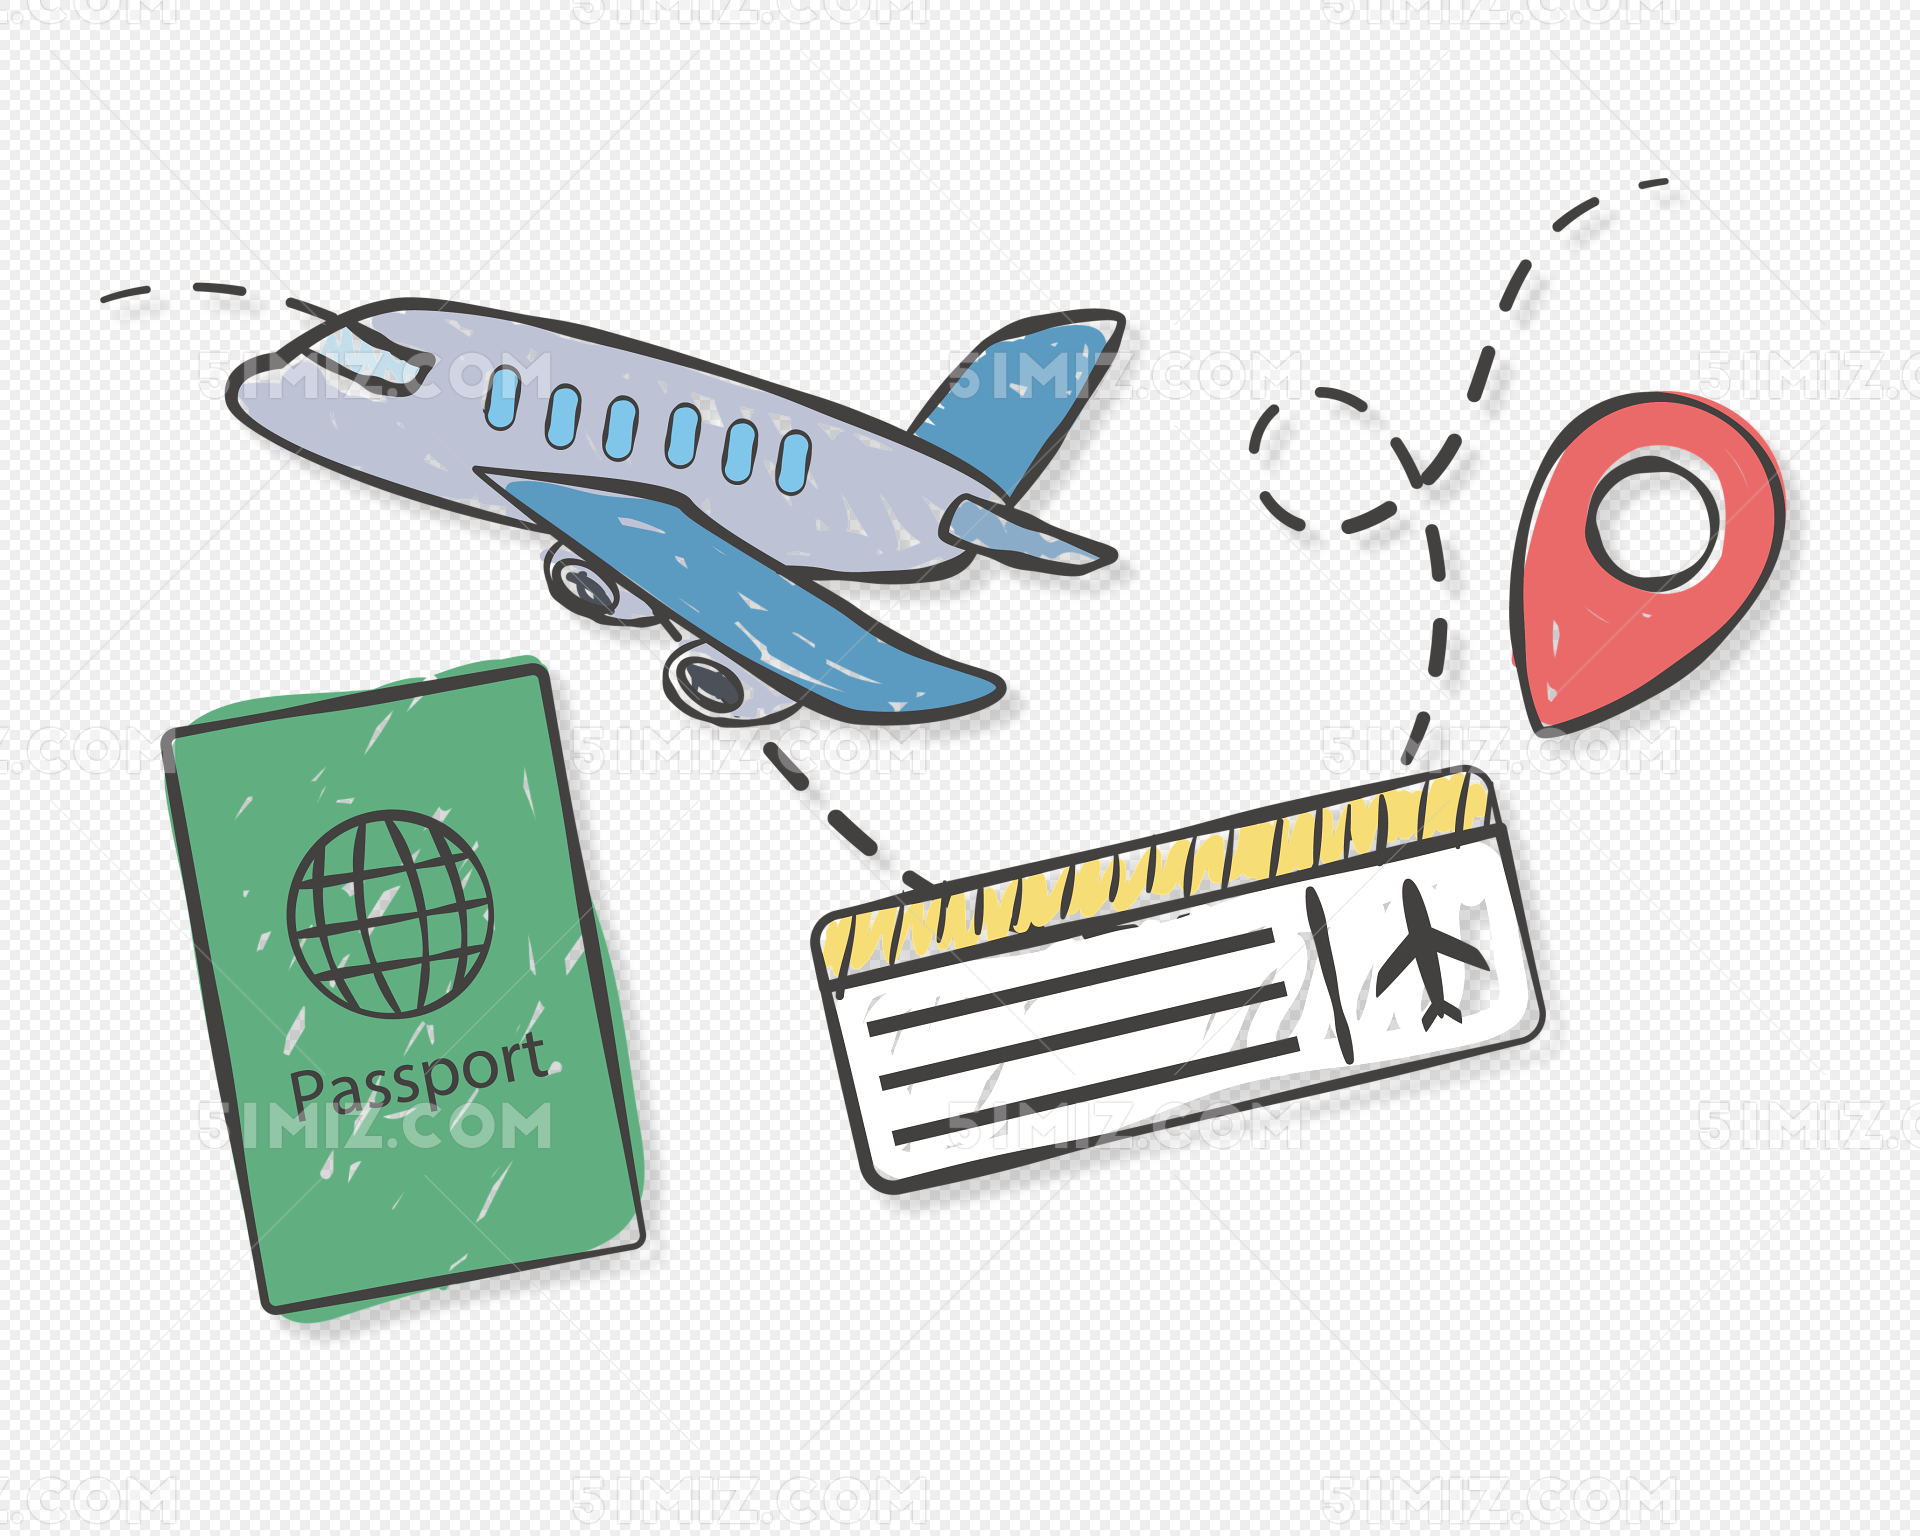 乘客拿着护照和机票-蓝牛仔影像-中国原创广告影像素材